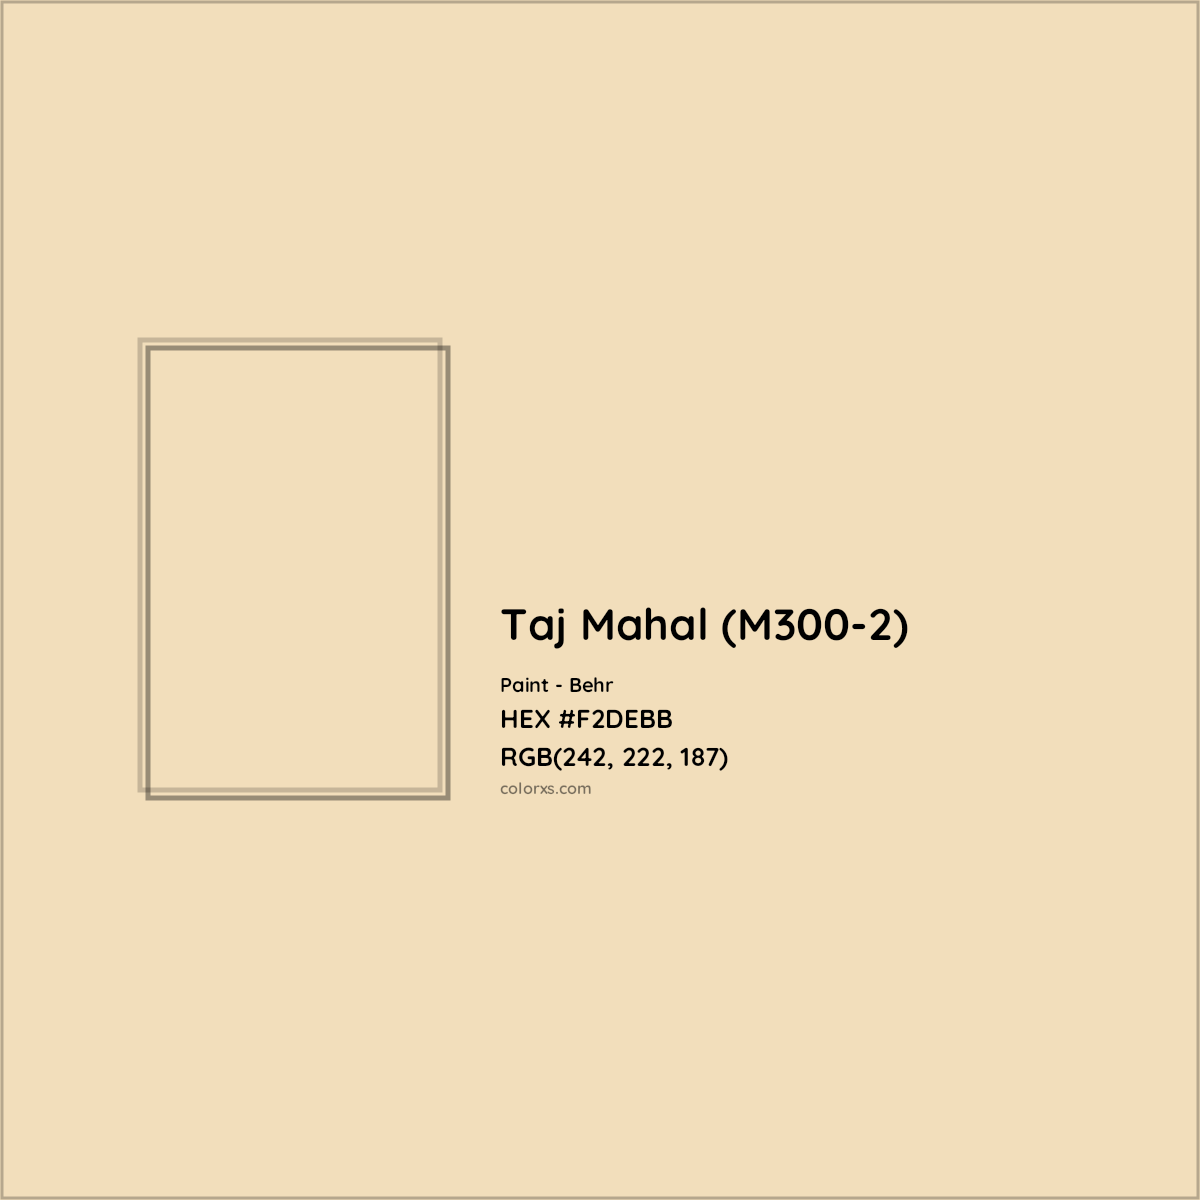 HEX #F2DEBB Taj Mahal (M300-2) Paint Behr - Color Code